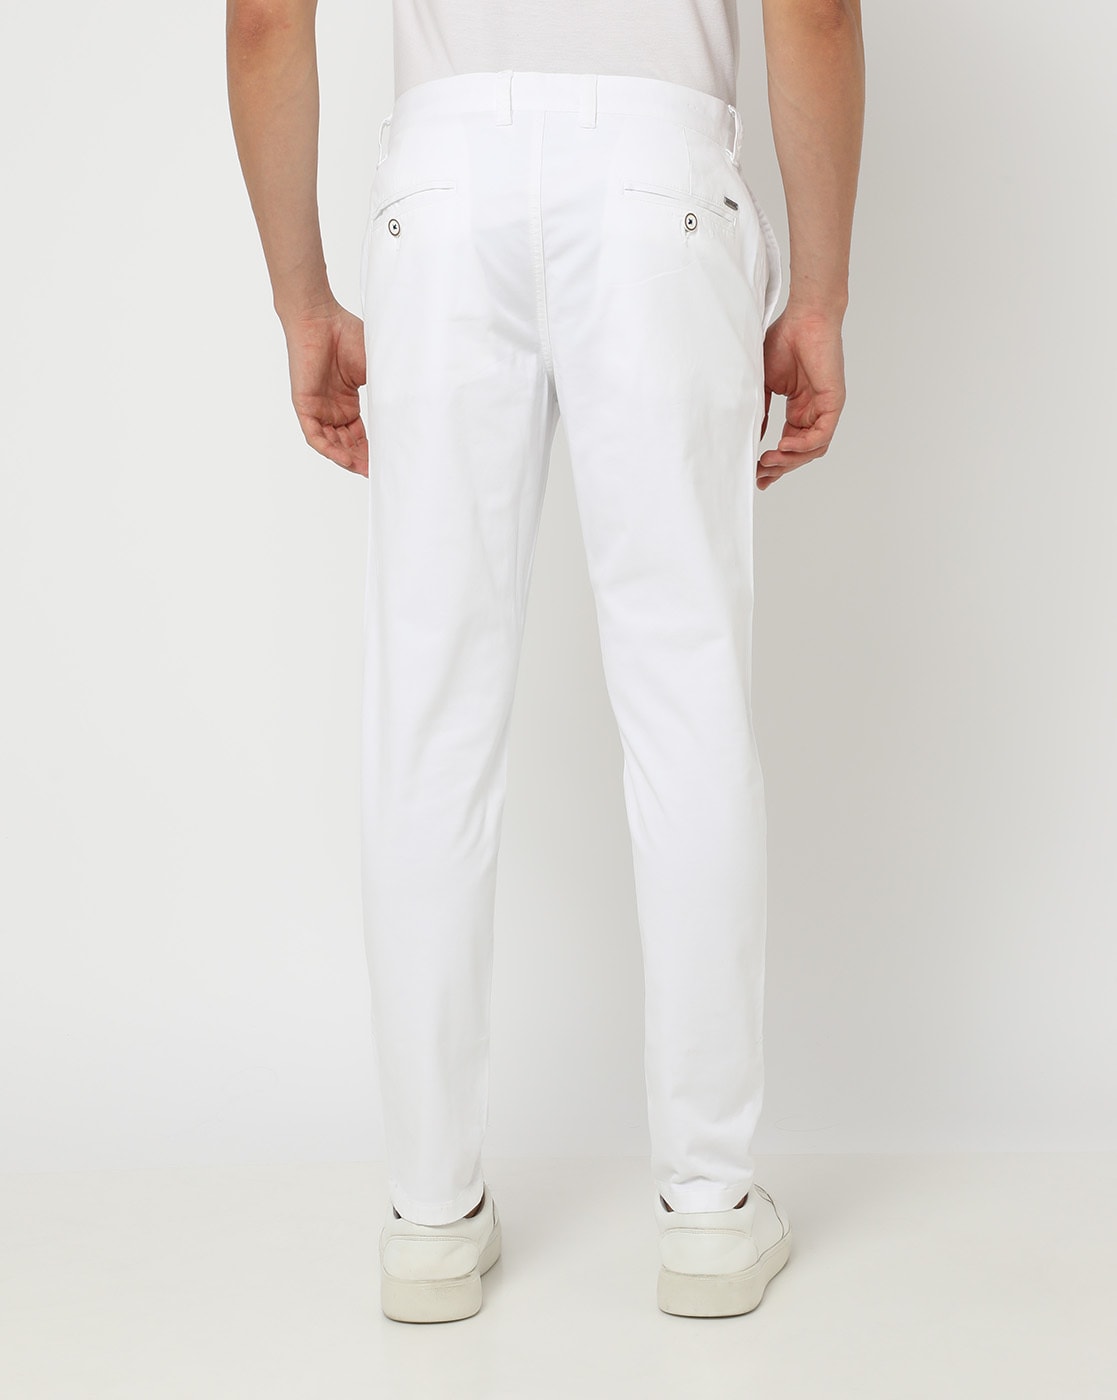 Buy Men's White Regular Trousers Online | Next UK